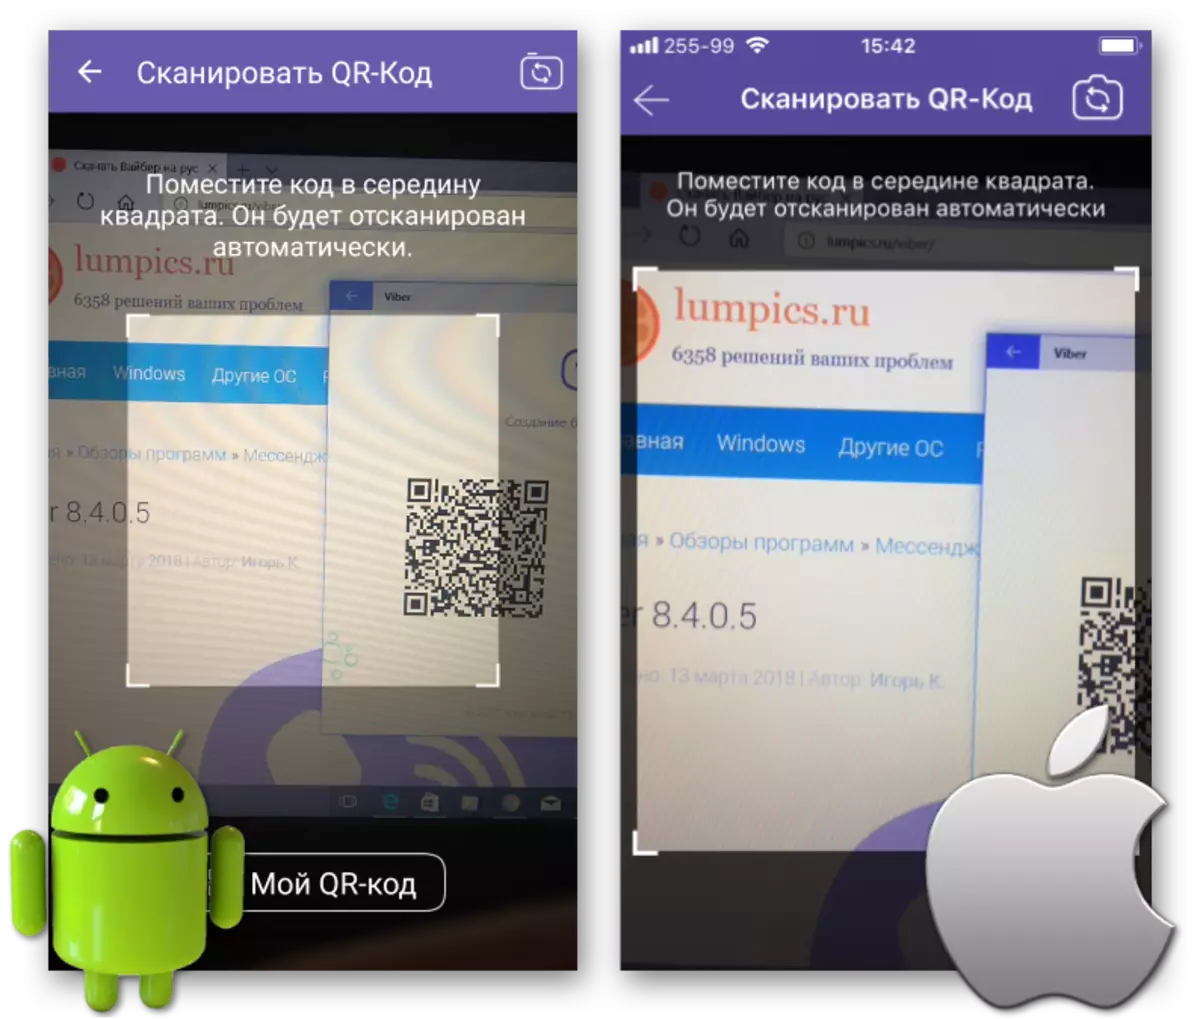 Viber pentru scanarea codului Windows QR utilizând smartphone-ul Android sau iPhone